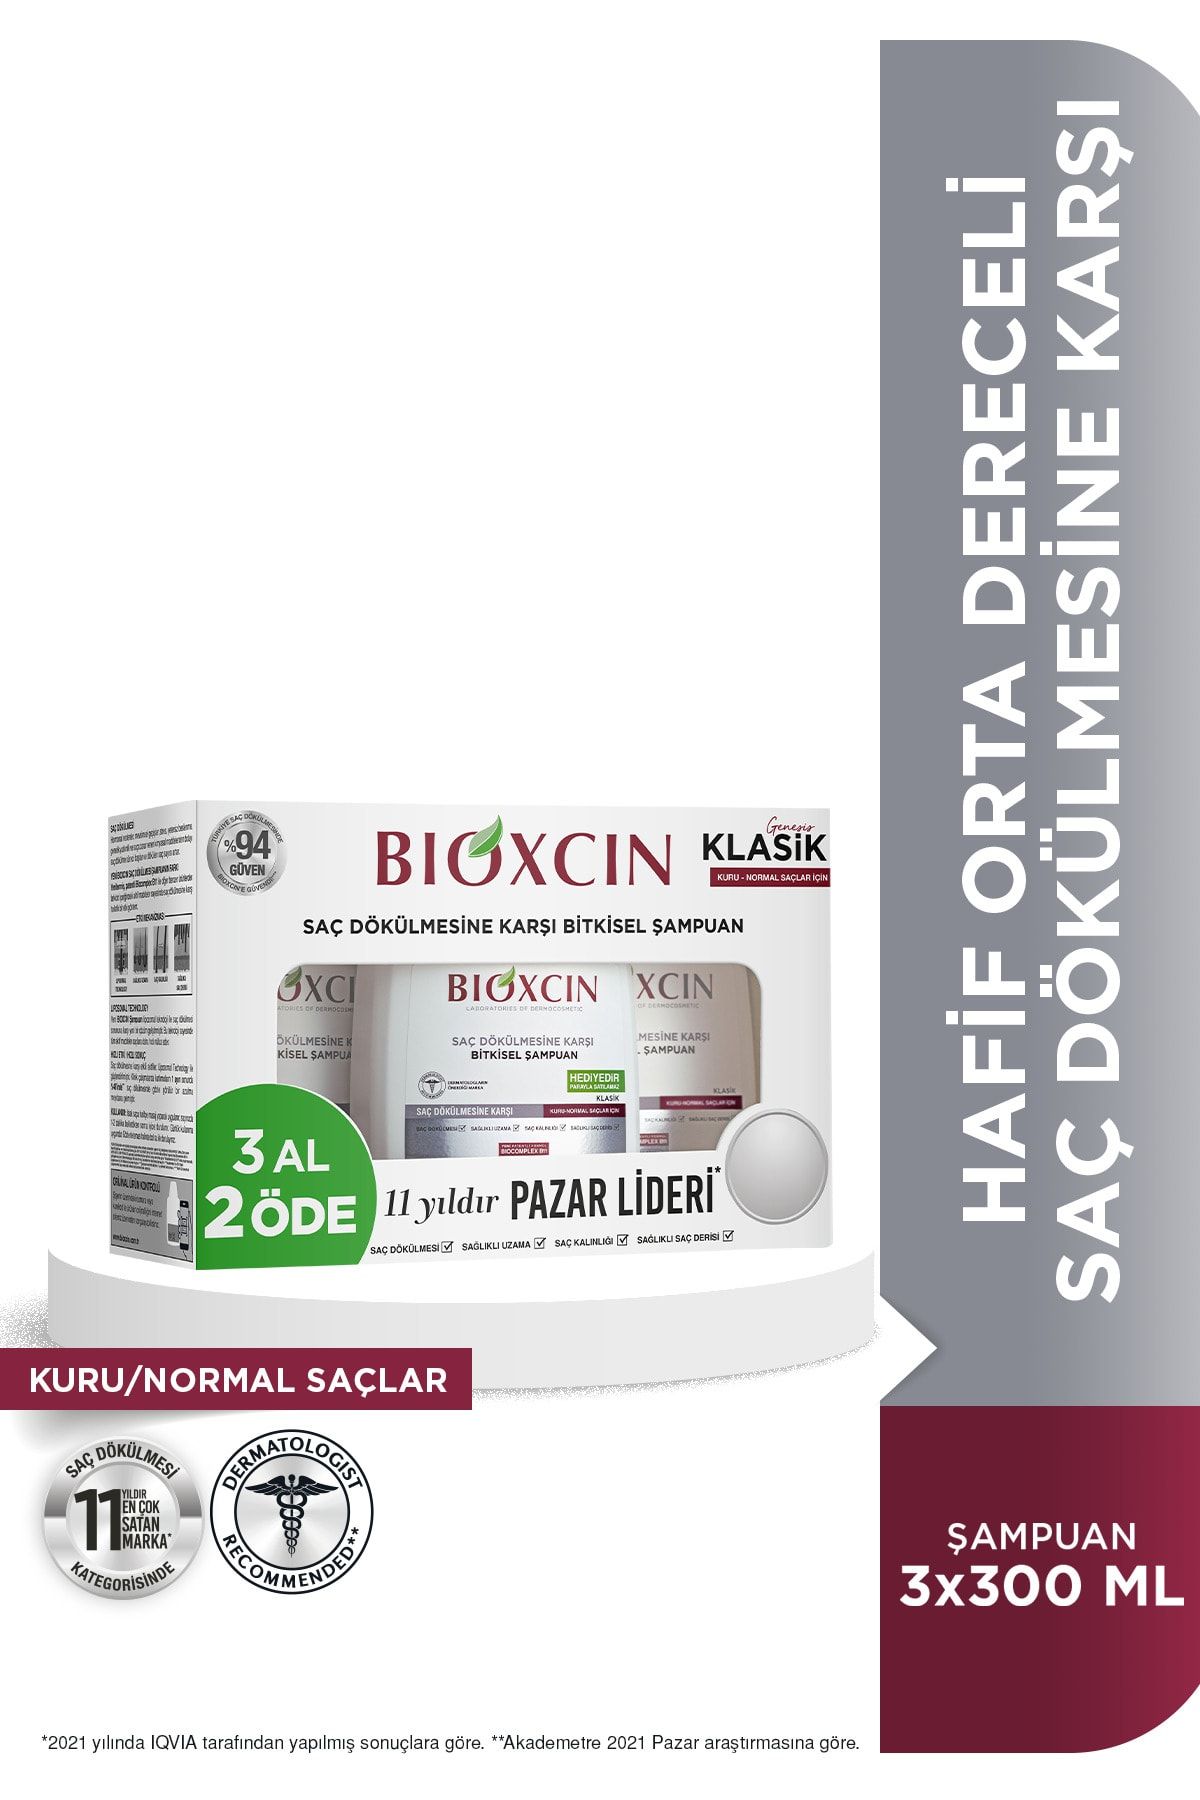 Bioxcin Genesis 3 Al 2 Öde Kuru-normal Saçlar Için Şampuan 3*300ml